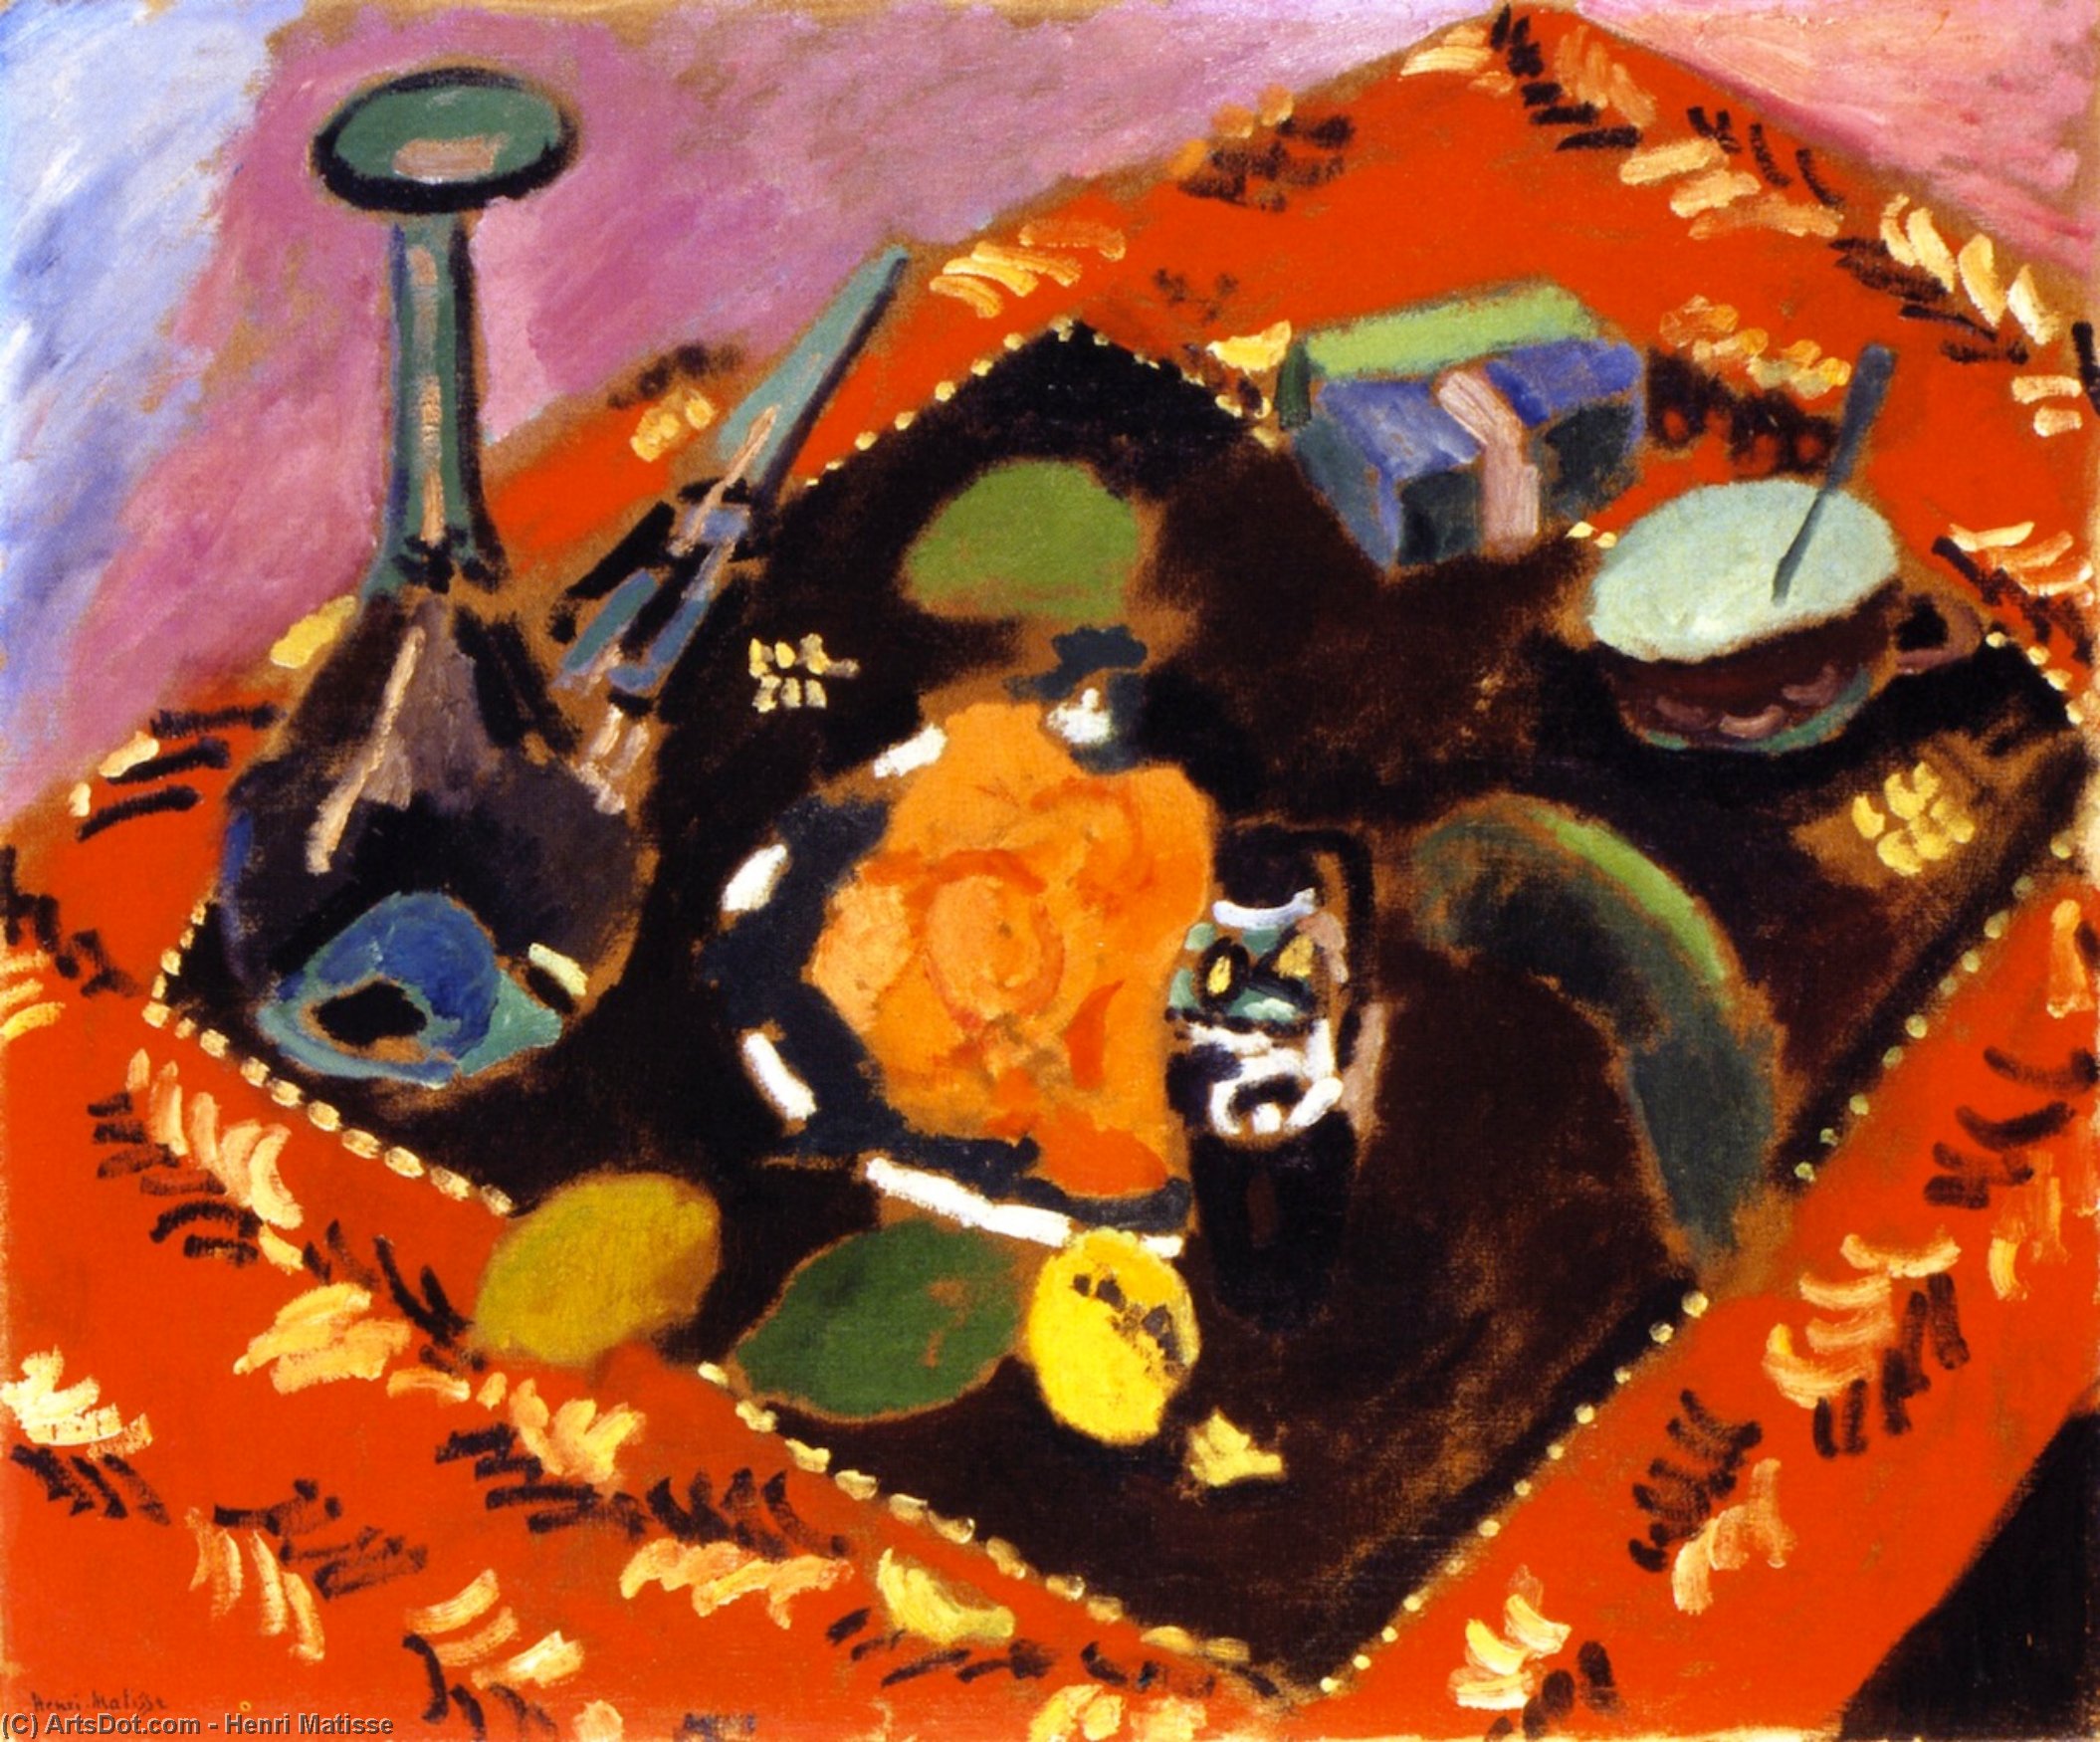 購入 美術館の複製、美術複製、絵画複製、美術館の品質プリント、美術品の複製、有名な絵画の複製、博物館の品質再現、キャンバスにアートプリント レッドカーペットとブラックカーペット(ル・タピス・ルージュとも呼ばれる)のディッシュとフルーツ, 1906 バイ Henri Matisse (に触発された) (1869-1954, France) | ArtsDot.com